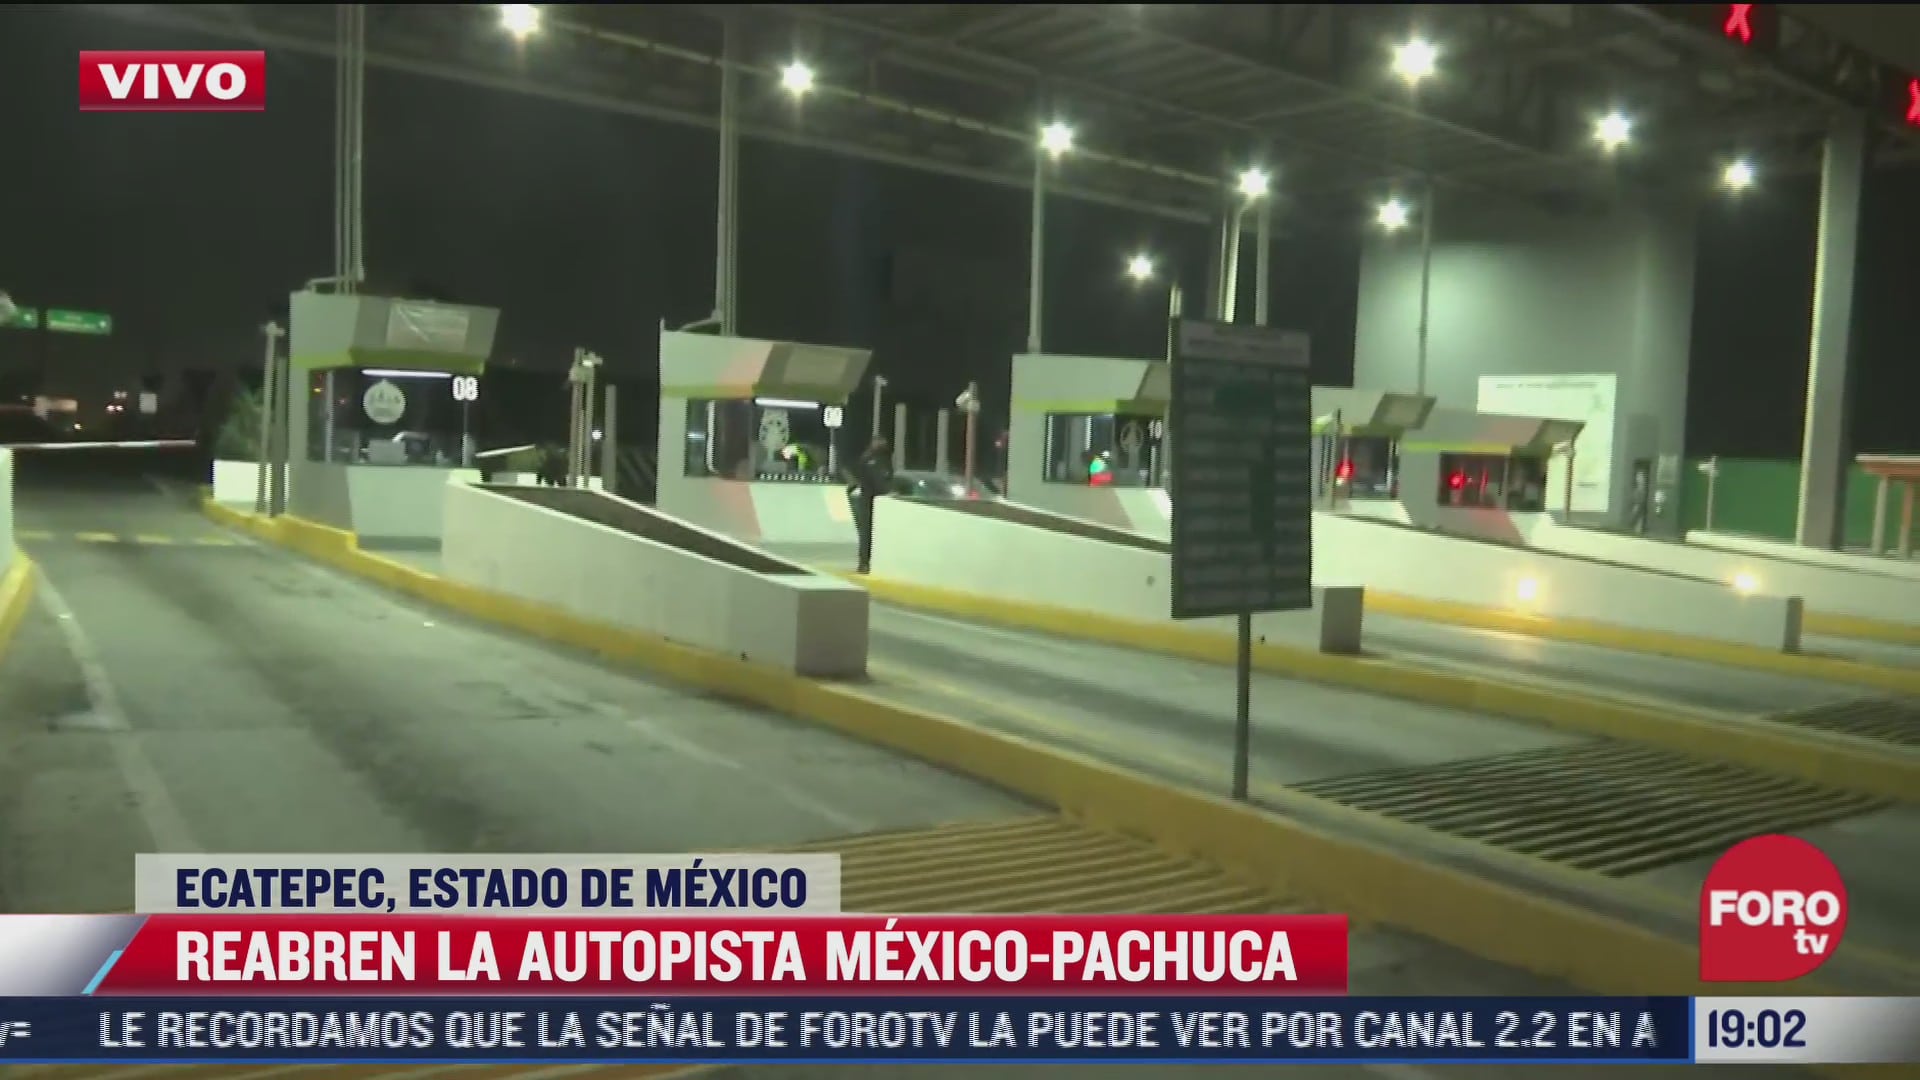 reabren autopista mexico pachuca tras 11 horas de bloqueo